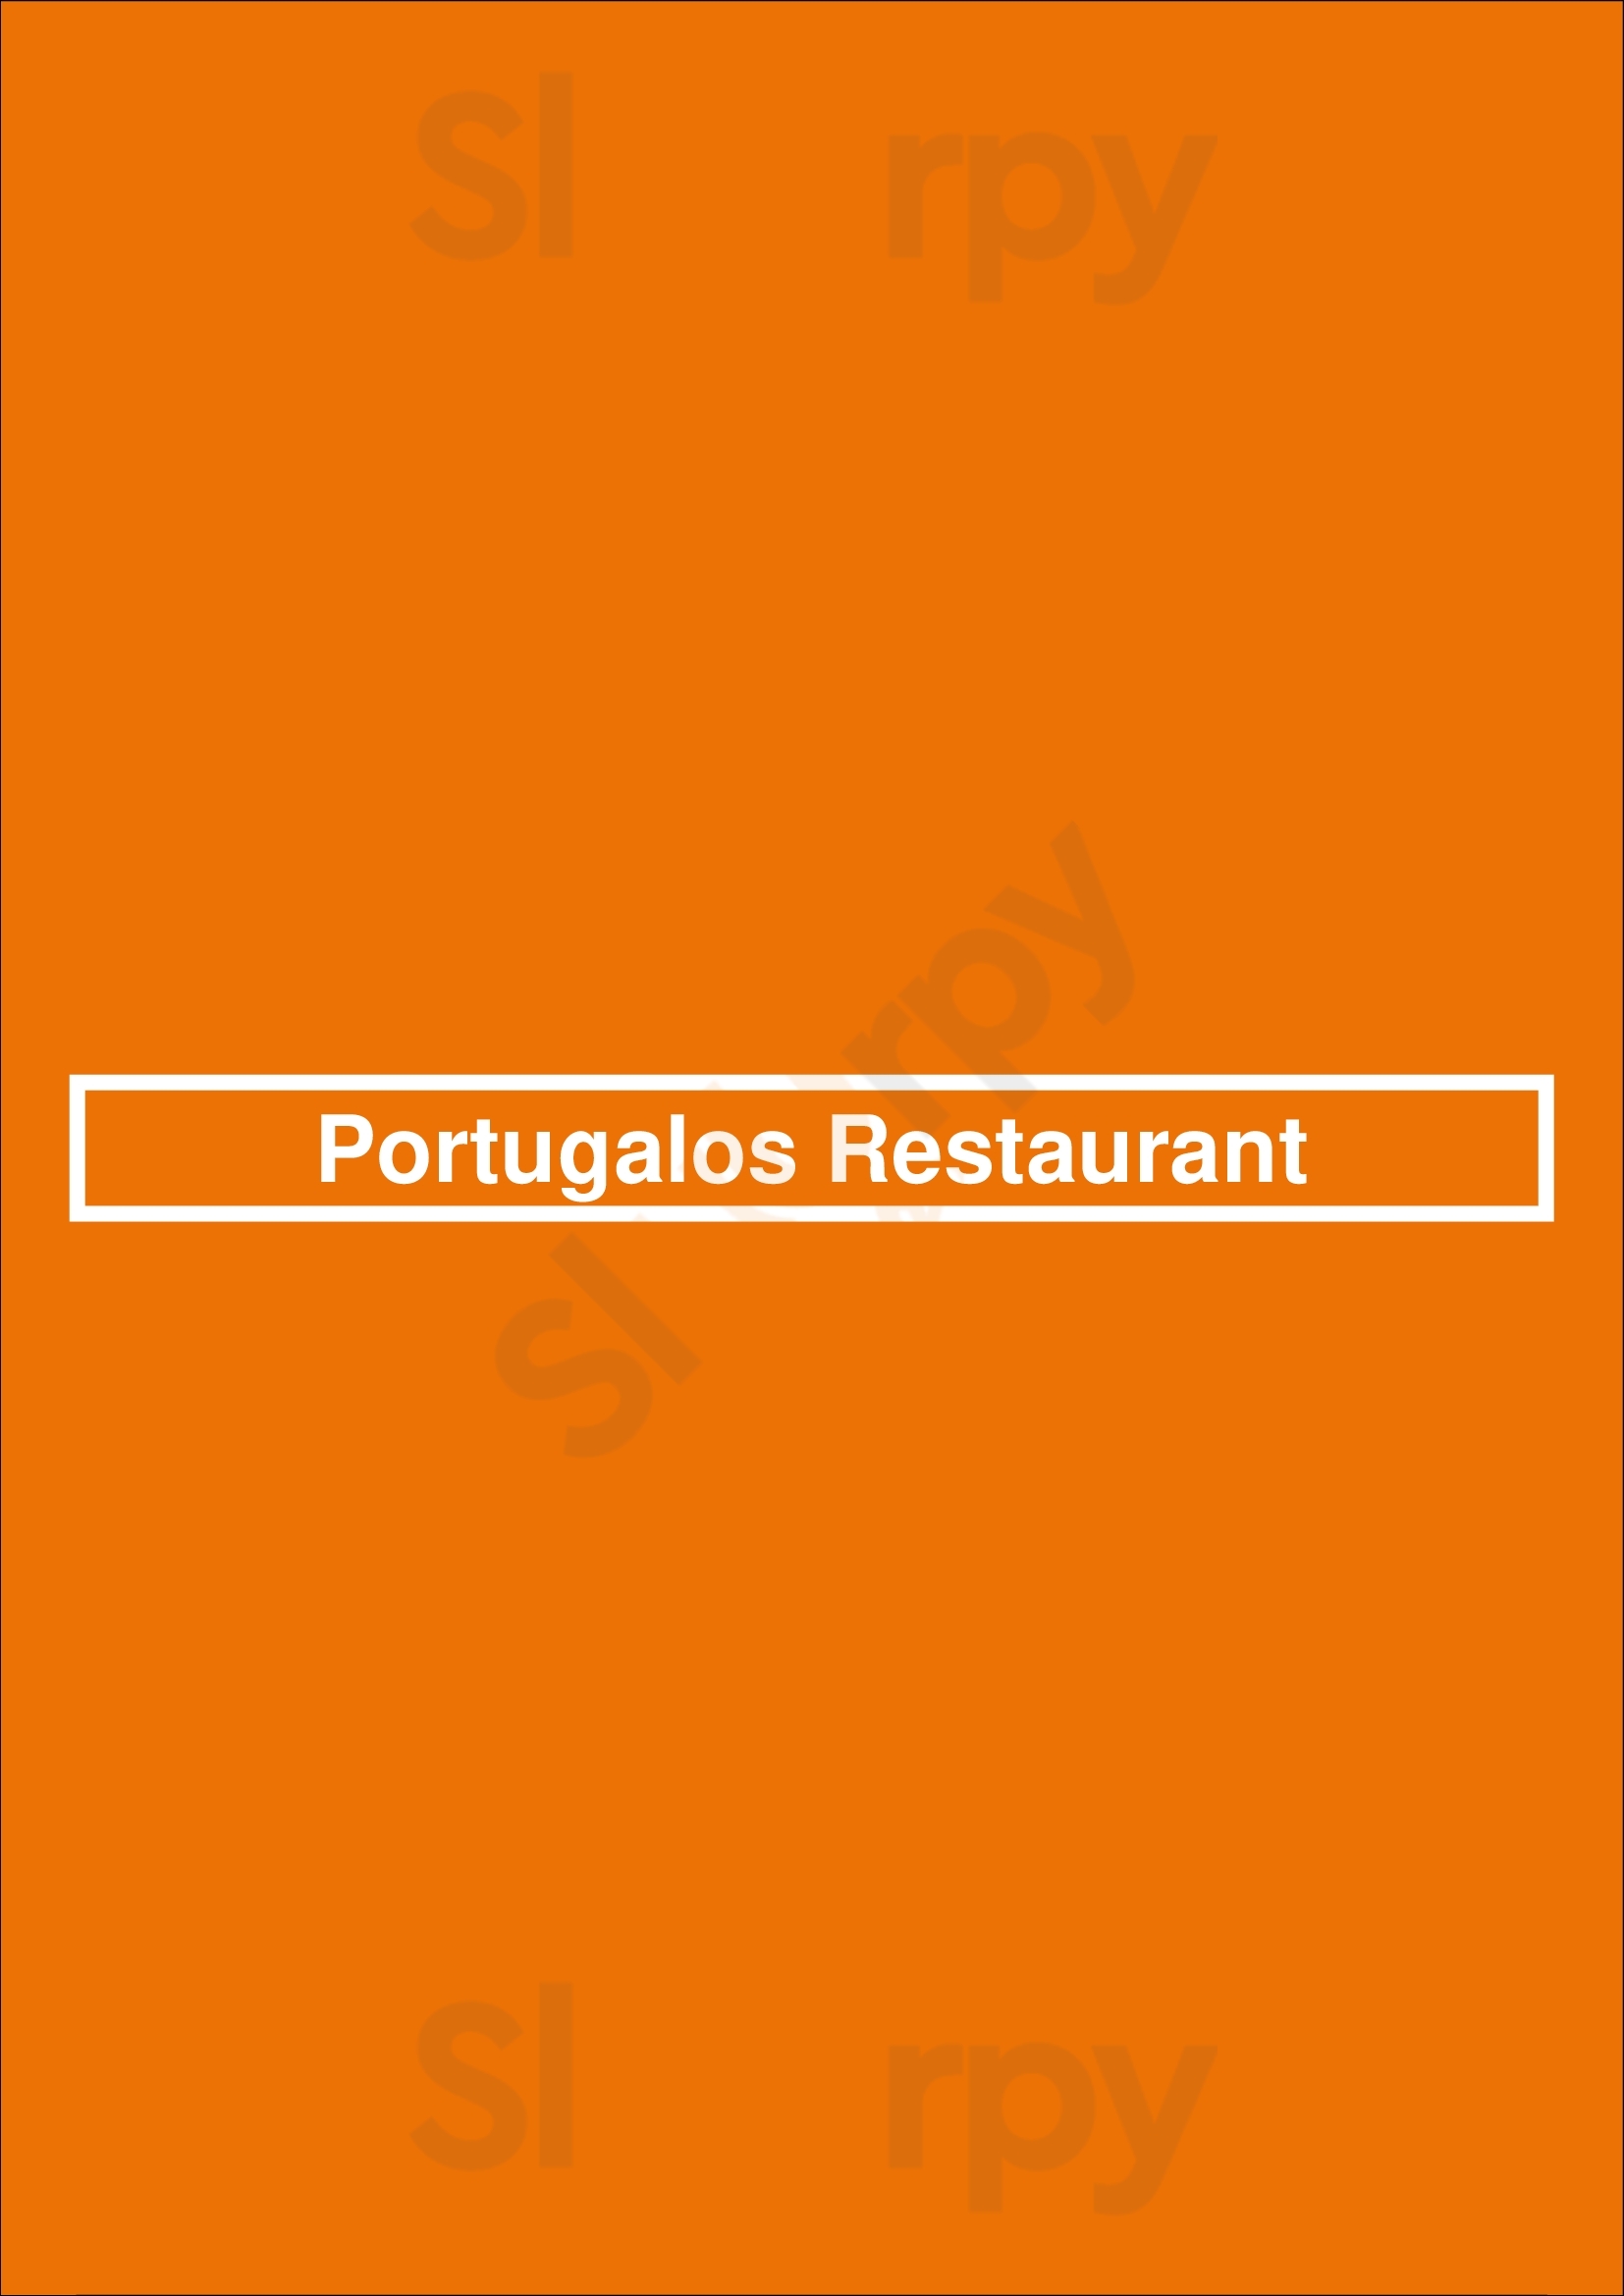 Portugalos Restaurant Gatineau Menu - 1